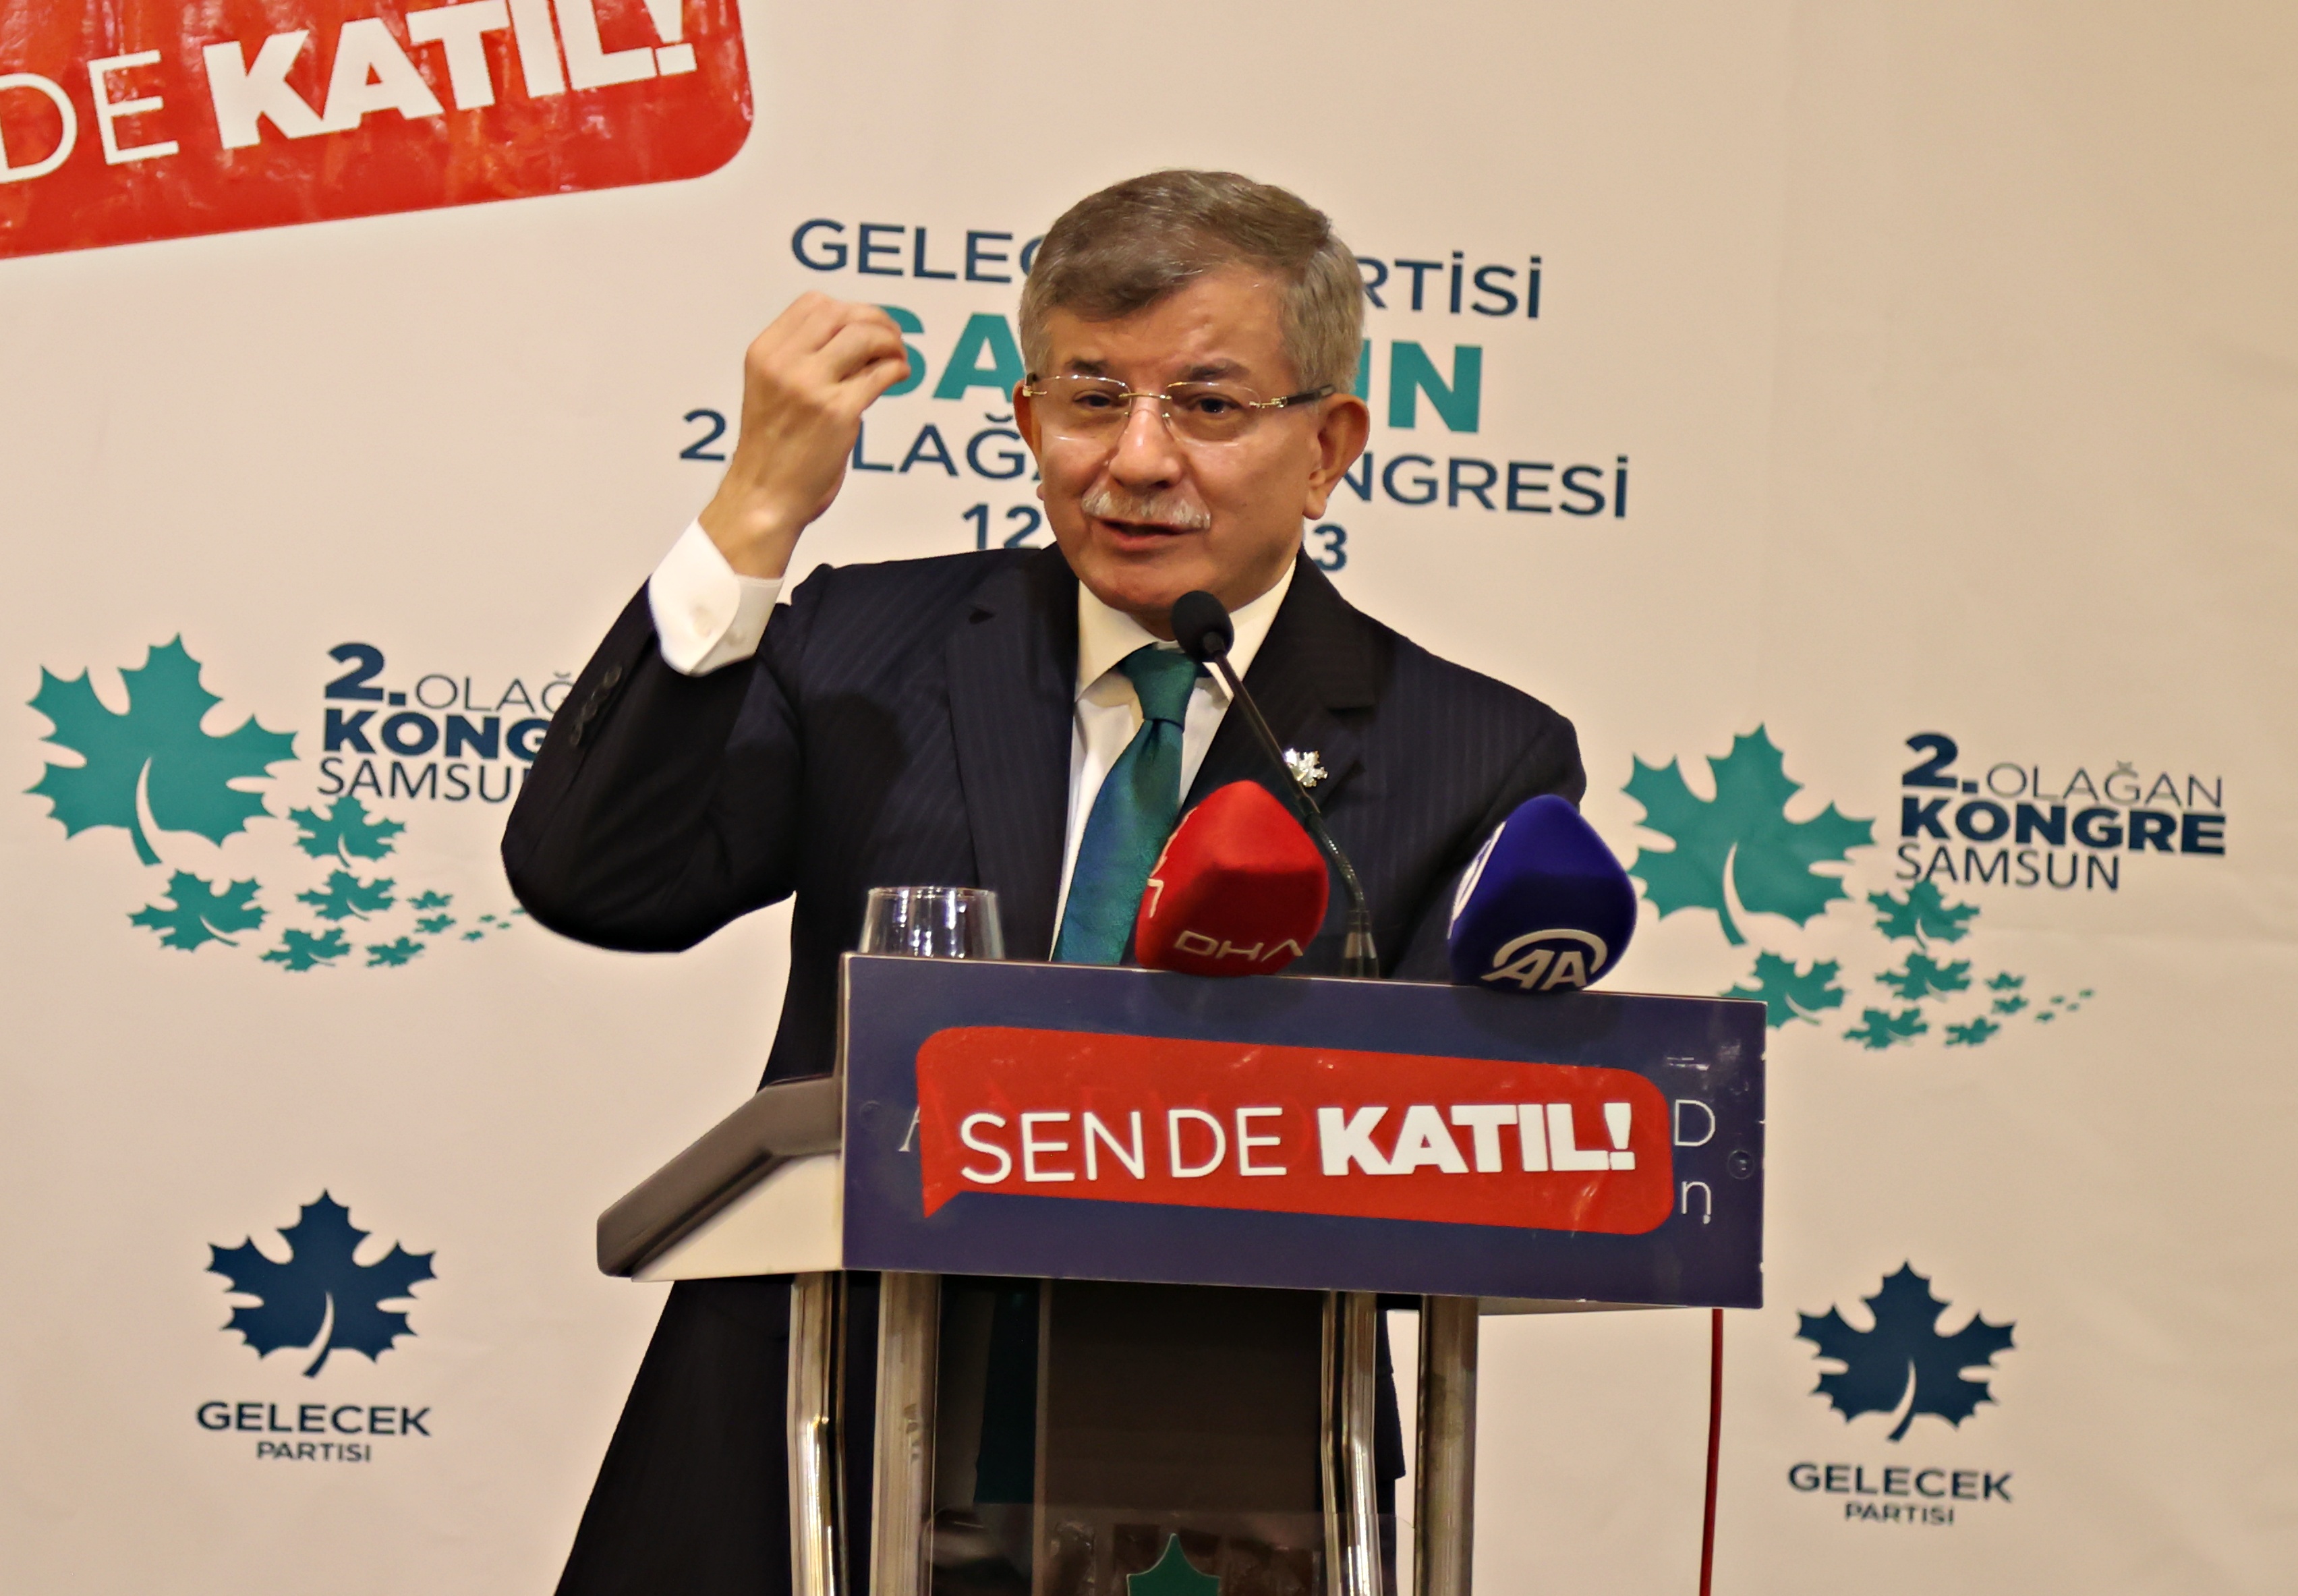 Gelecek Partisi Genel Başkanı Davutoğlu, partisinin Samsun il kongresine katıldı: